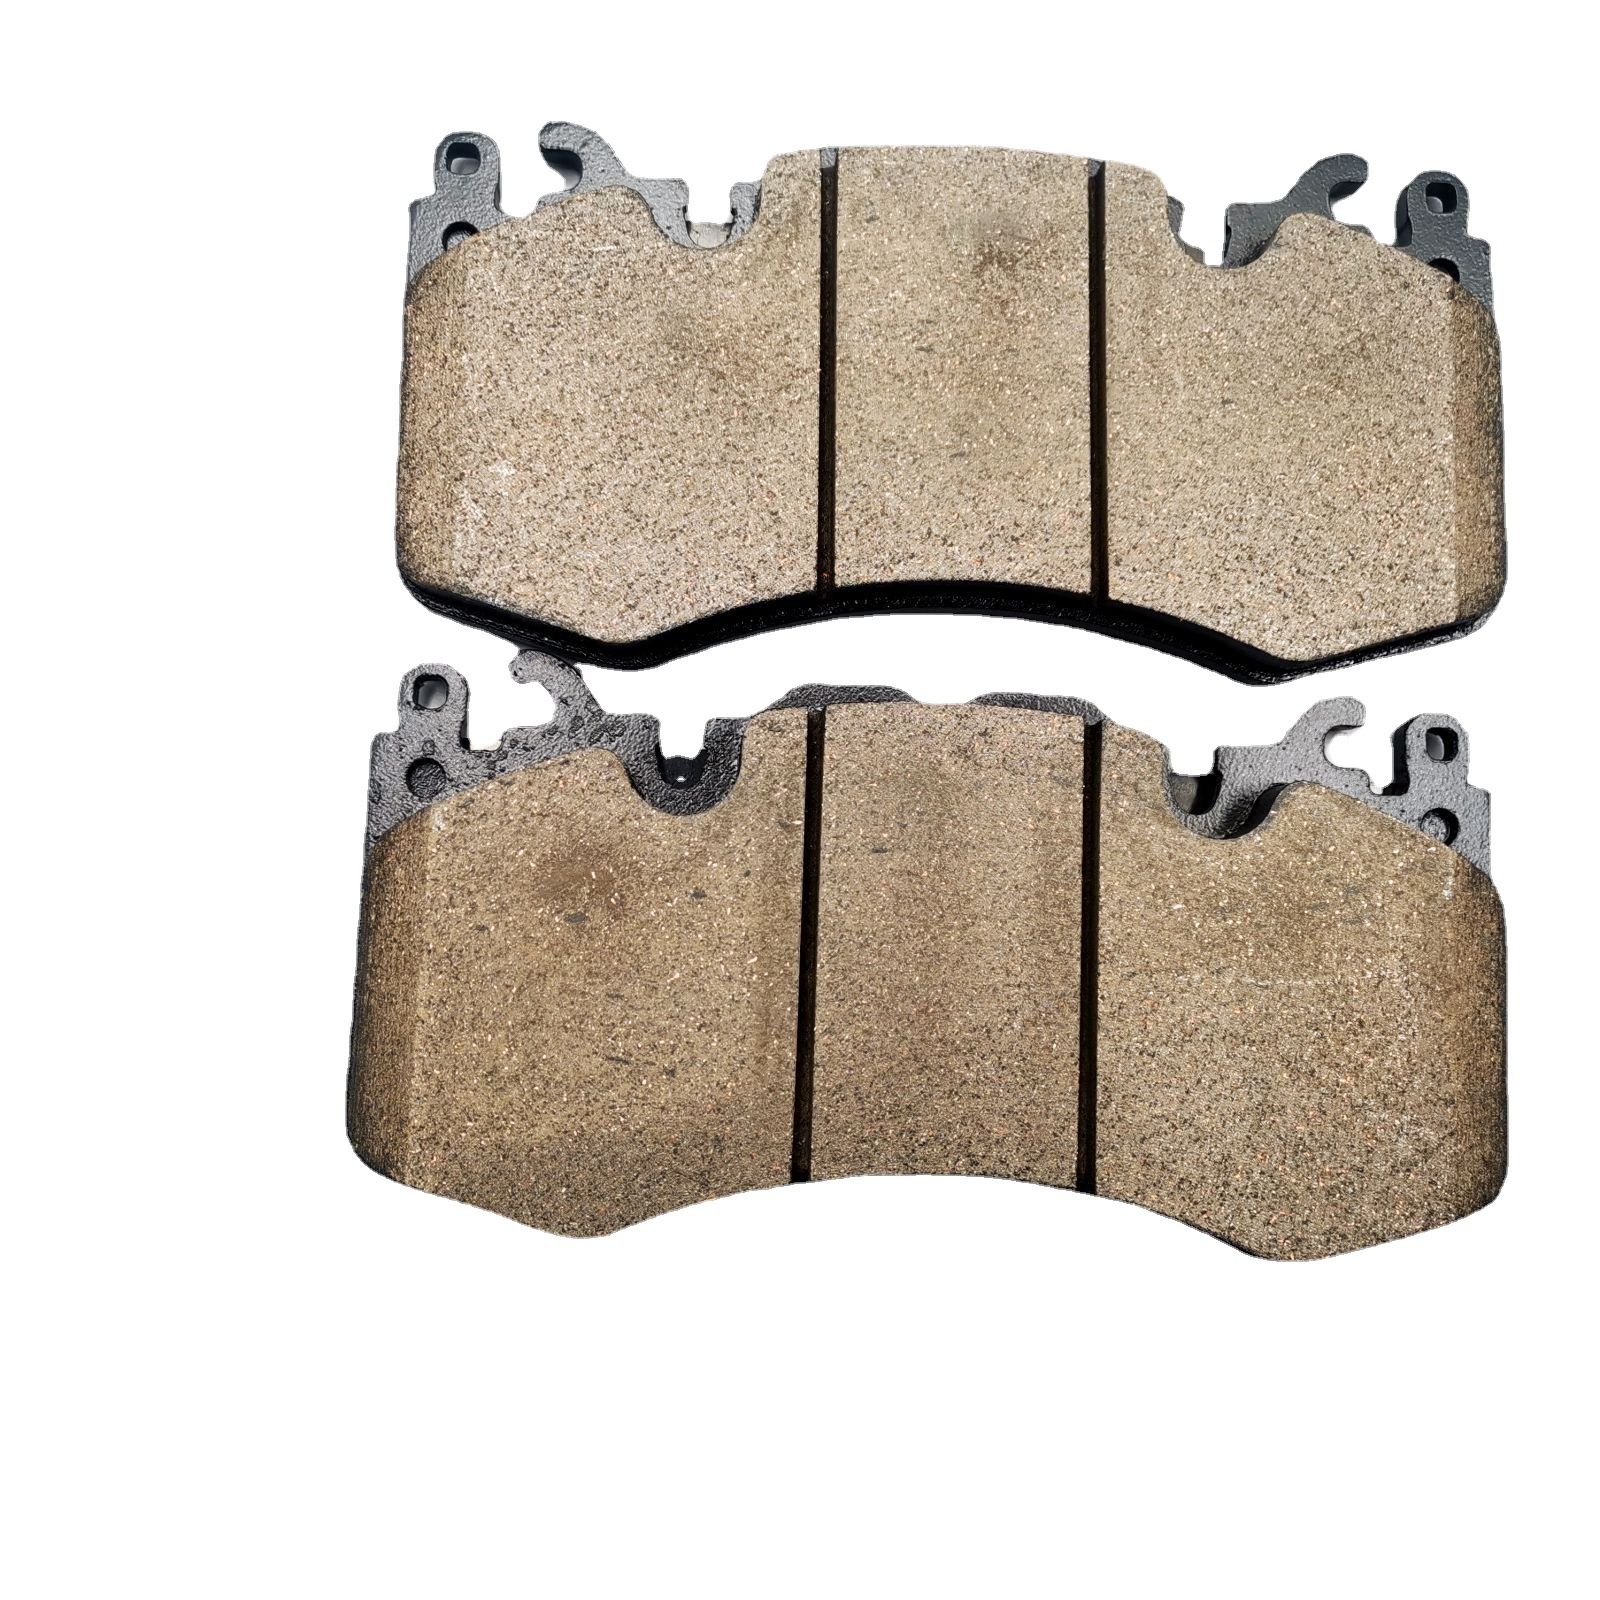 Cars Brake Pads Lr093886 Ceramic Semi-Metal with Small Amount of Metal Brake Pad Brake Pads